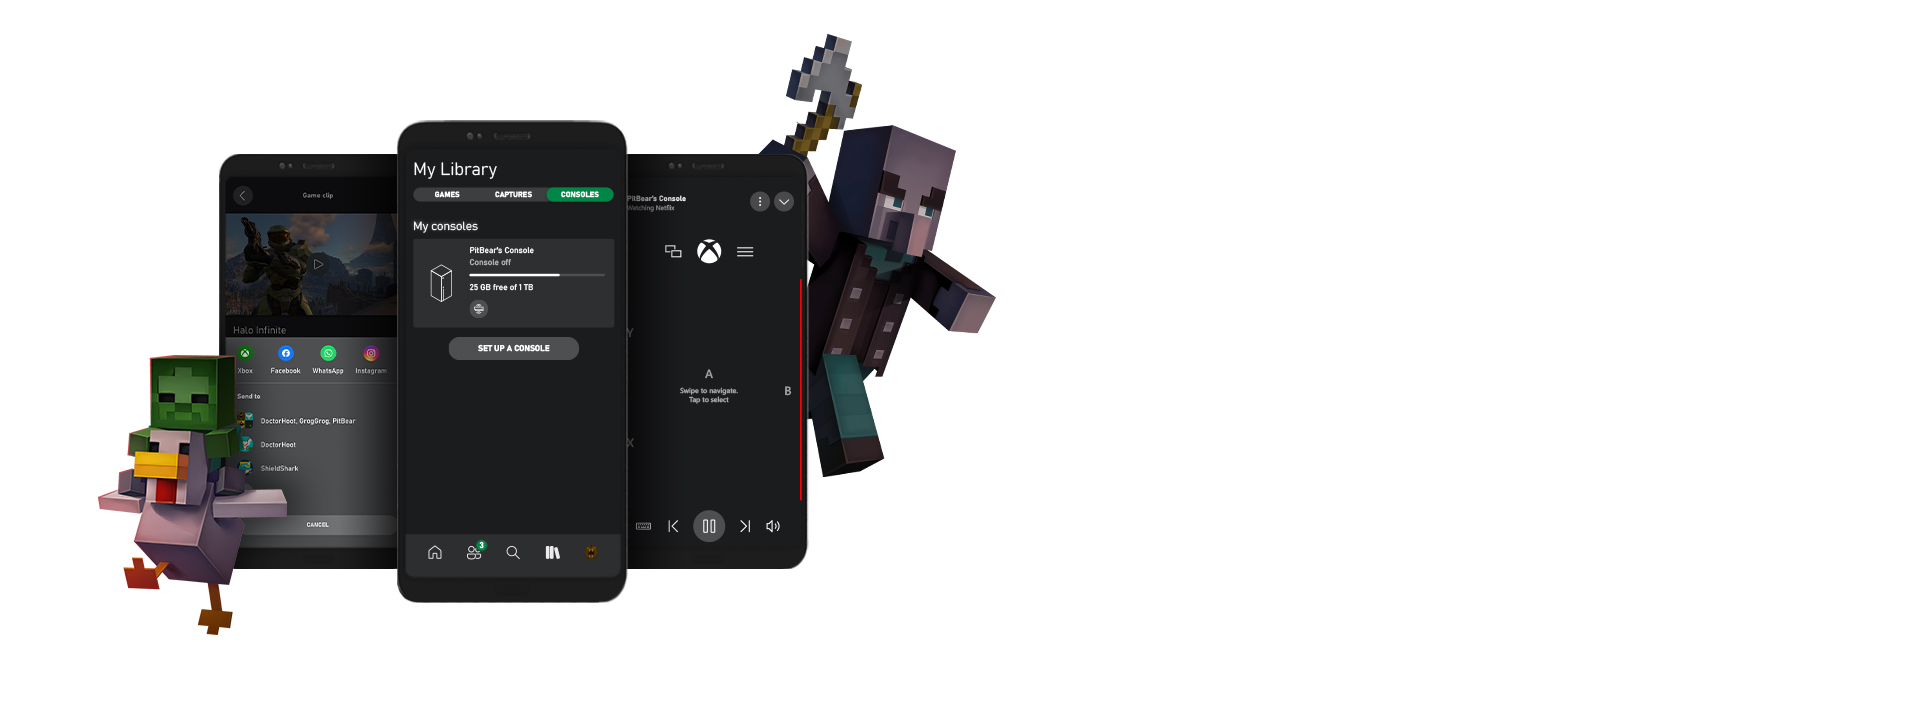 Minecraft-Charaktere umgeben mehrere Screenshots der Benutzeroberfläche der Xbox-App für Mobilgeräte.